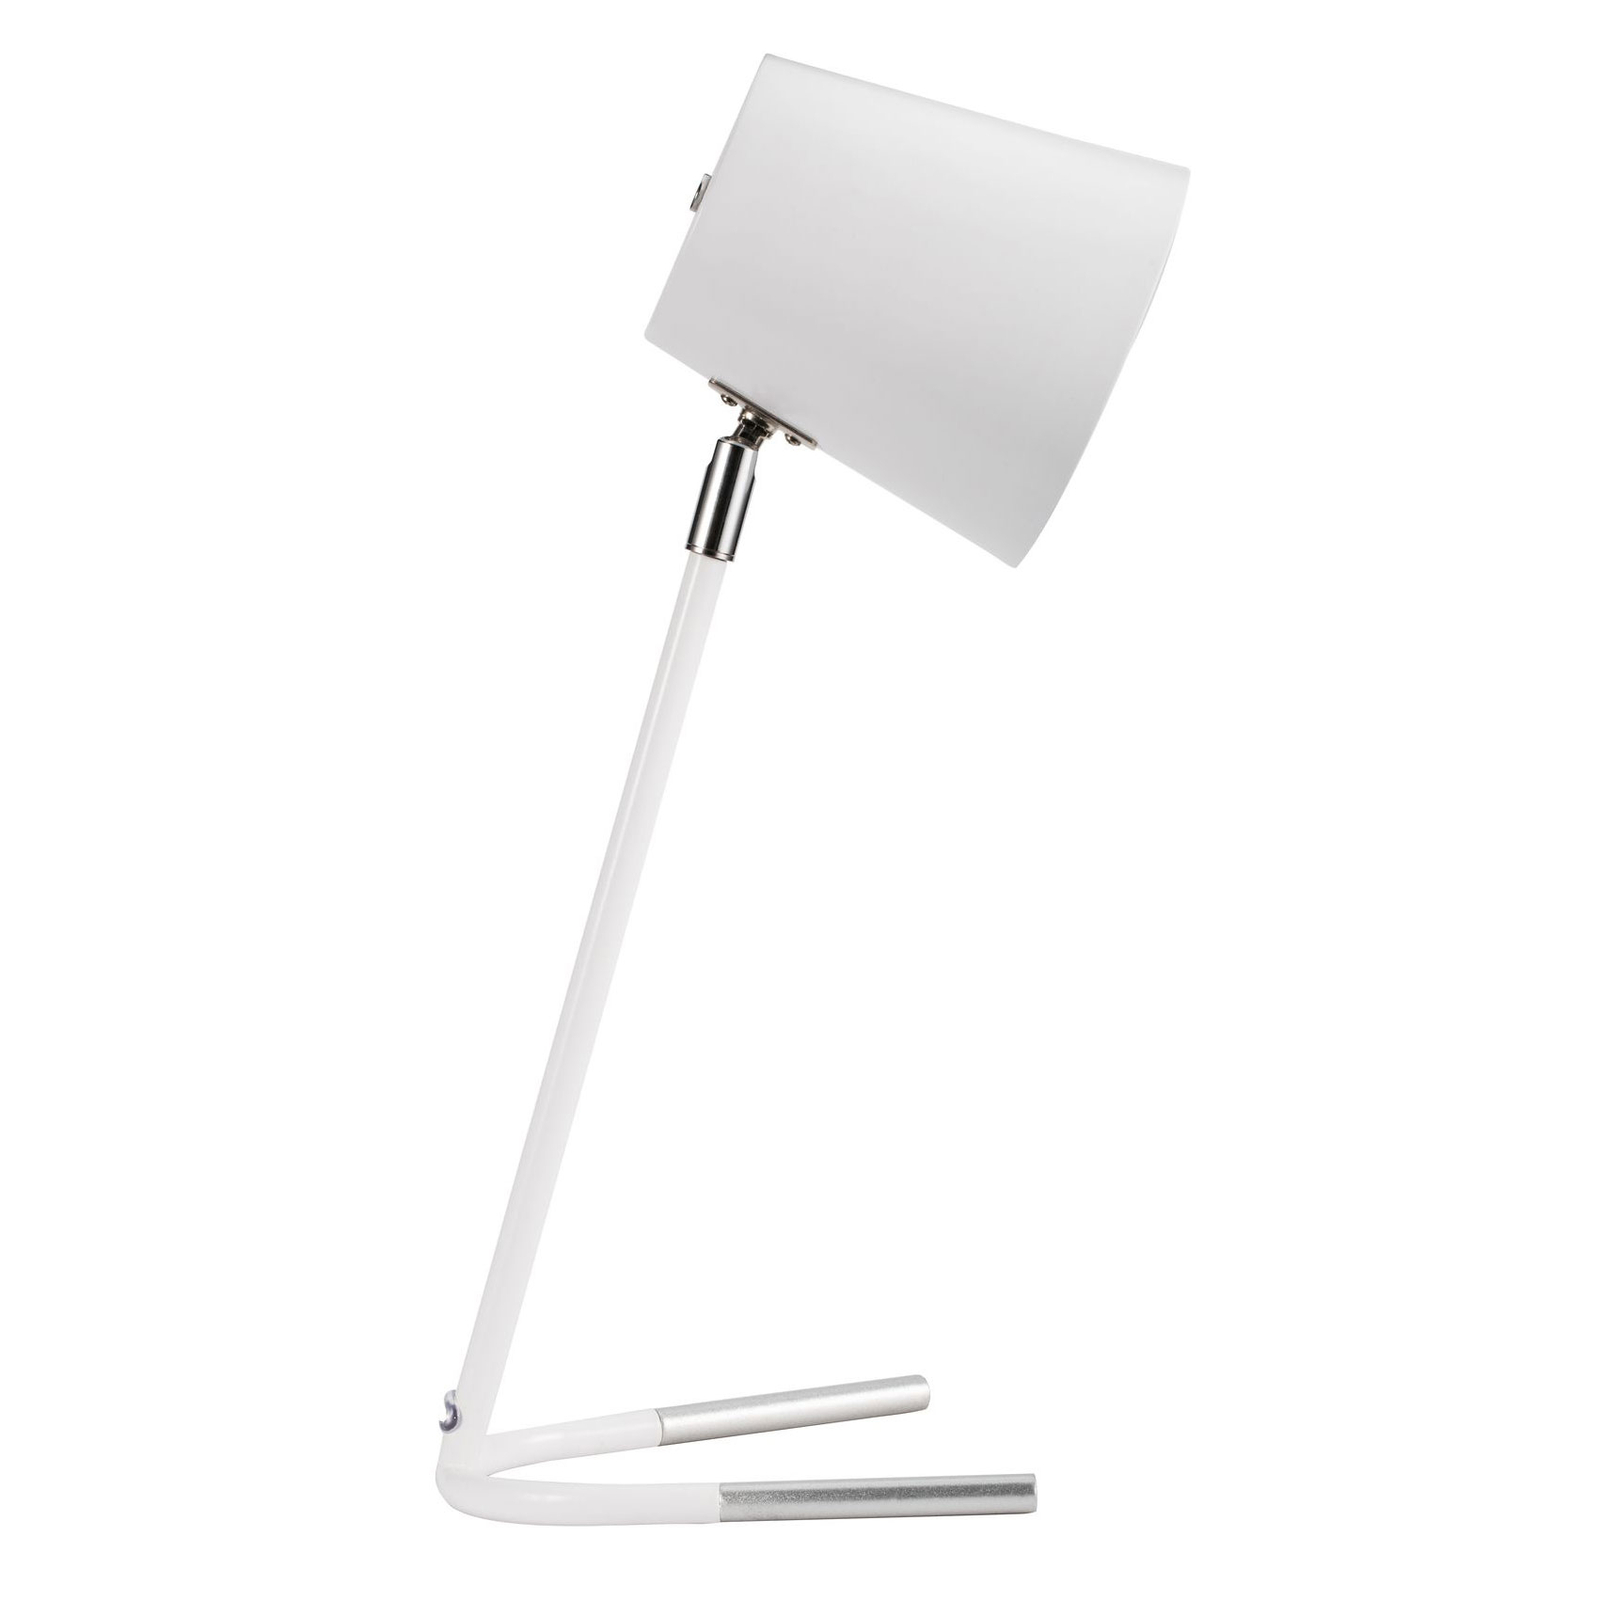 Pauleen True Ally stolní lampa v bílé barvě